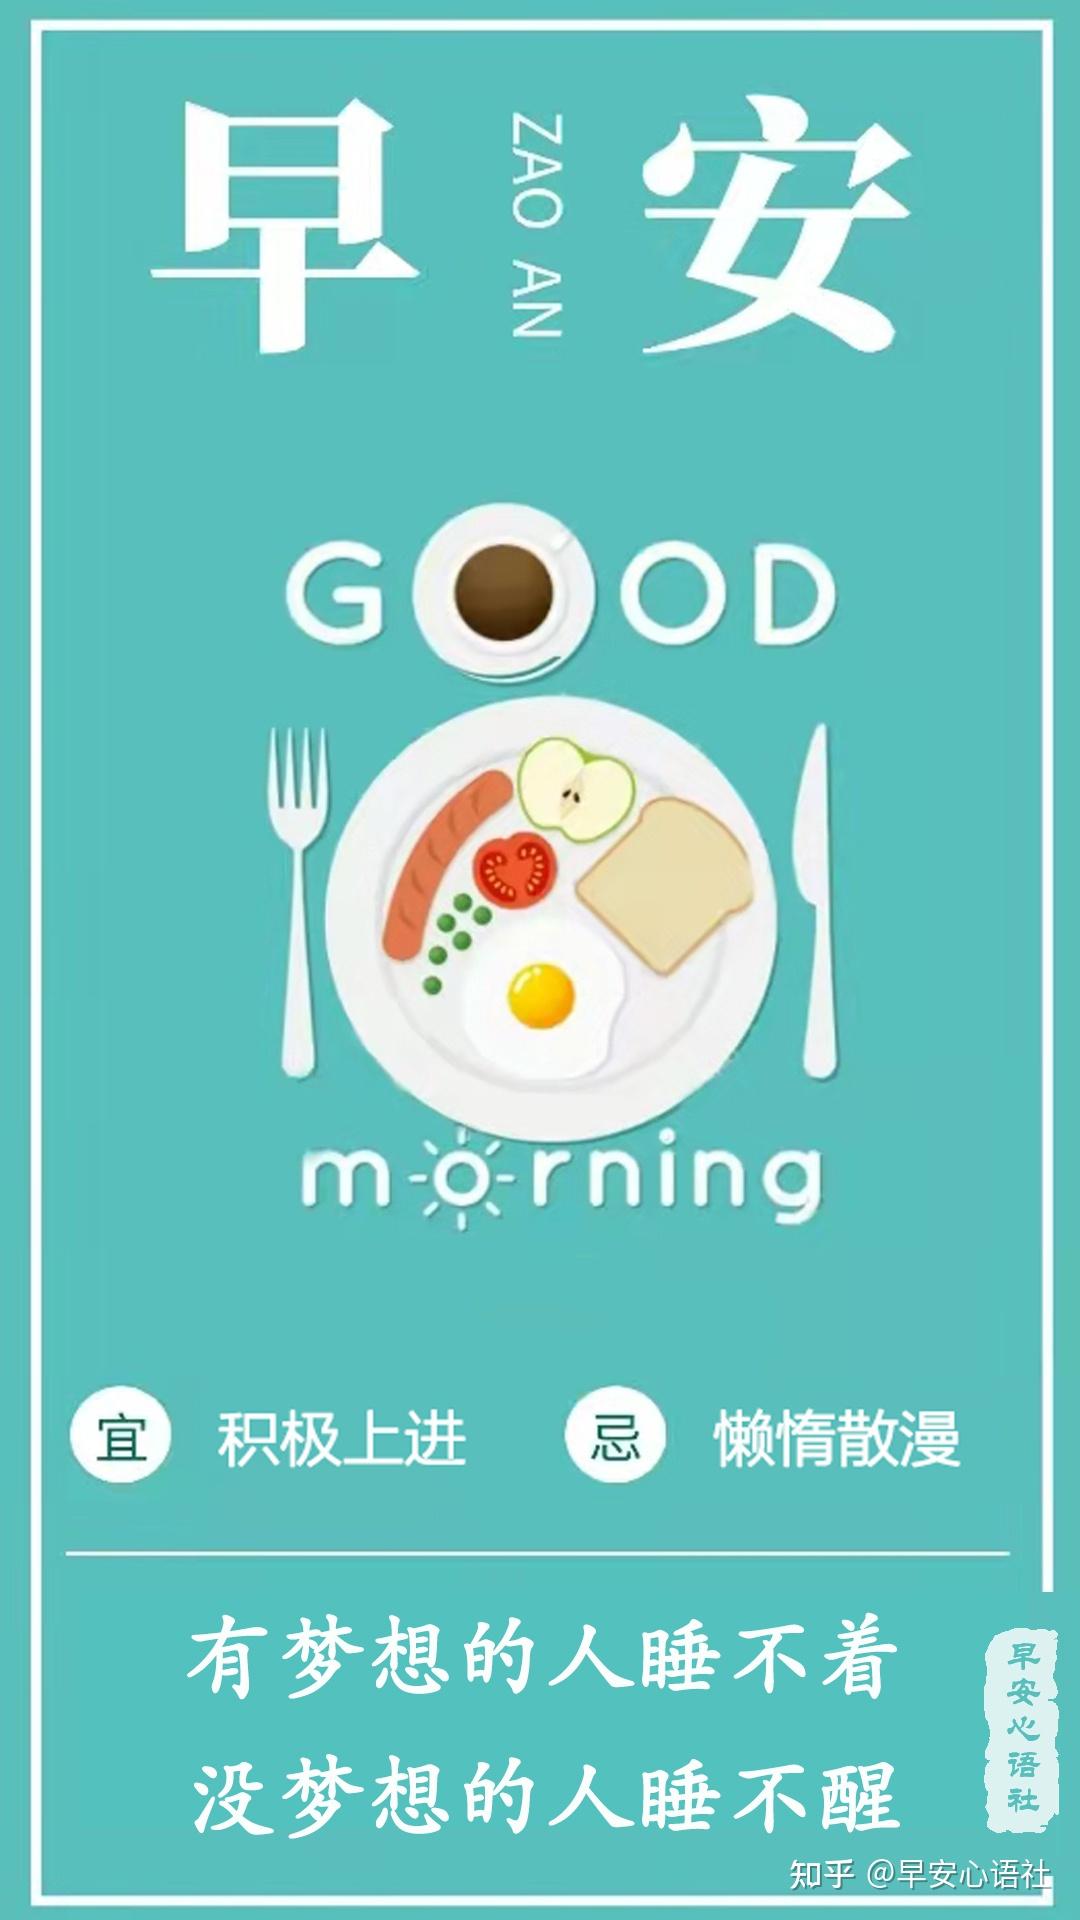 6月13日早安心语正能量励志激励人的语录 微信最新早上好励志图片带字-搜狐大视野-搜狐新闻